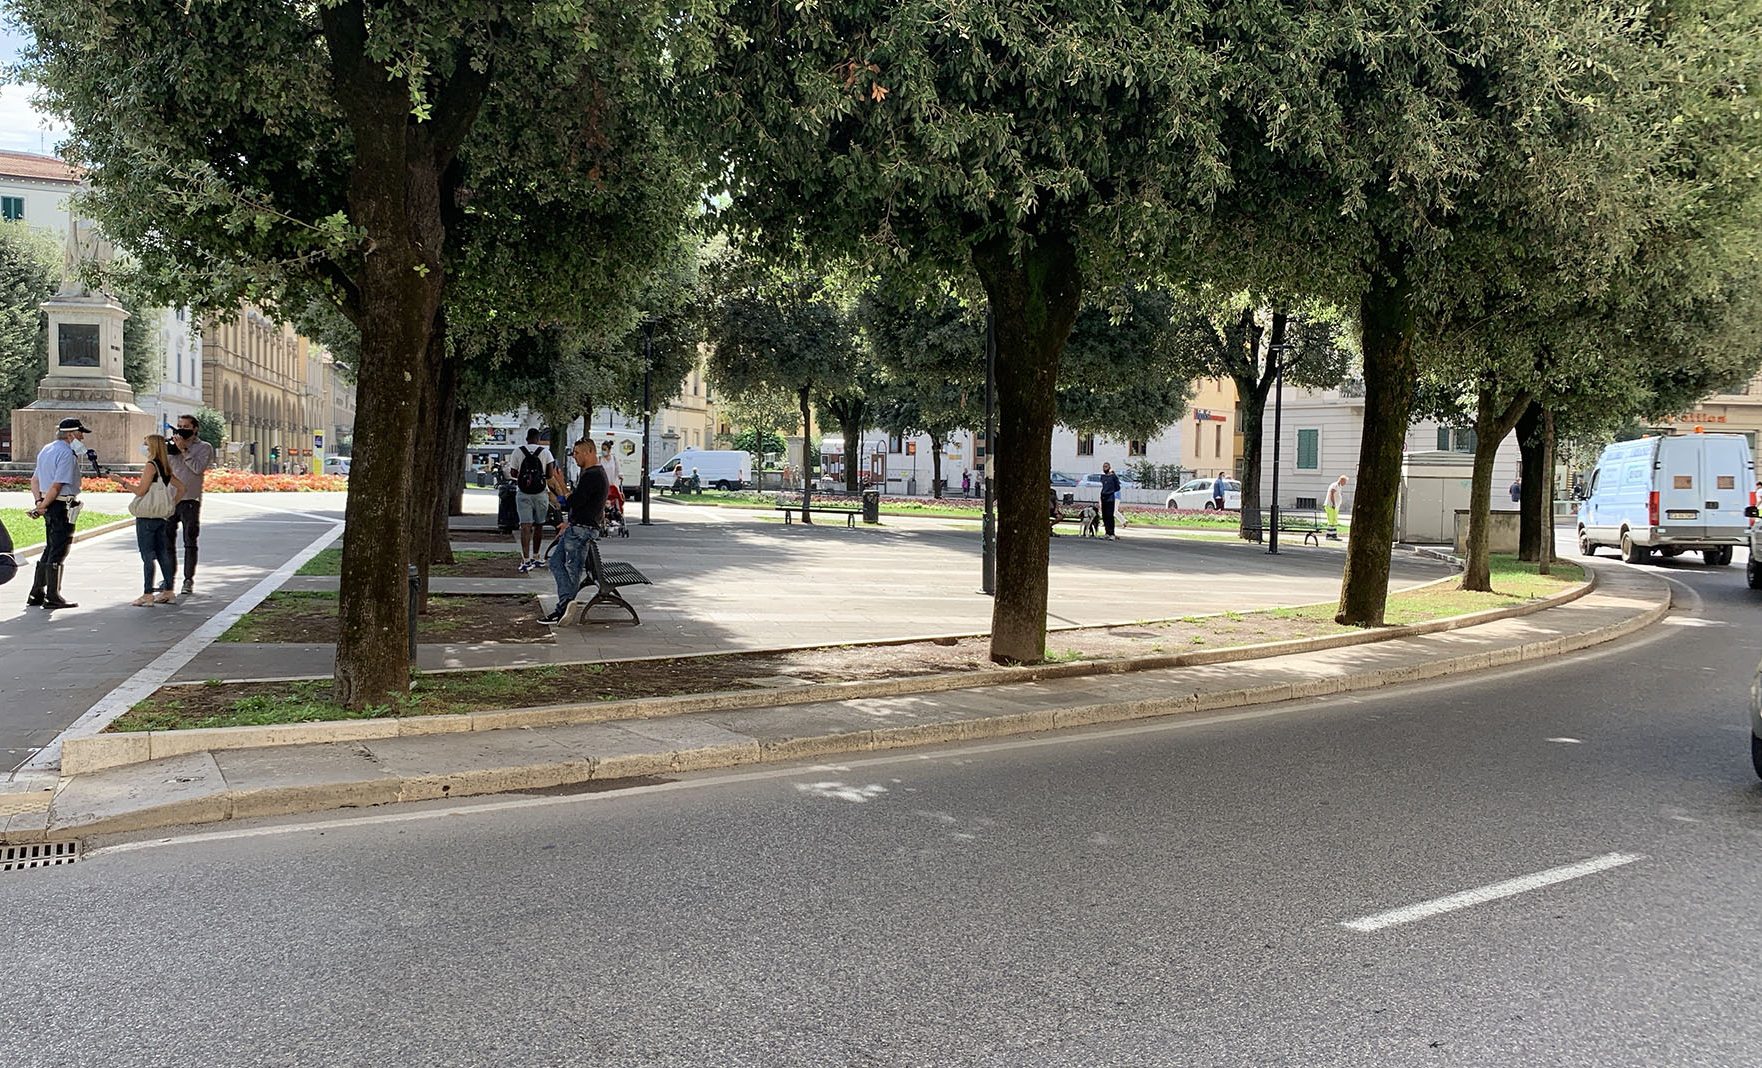 Accoltella due rider dopo una lite in Piazza Guido Monaco, denunciato rumeno per lesioni aggravate